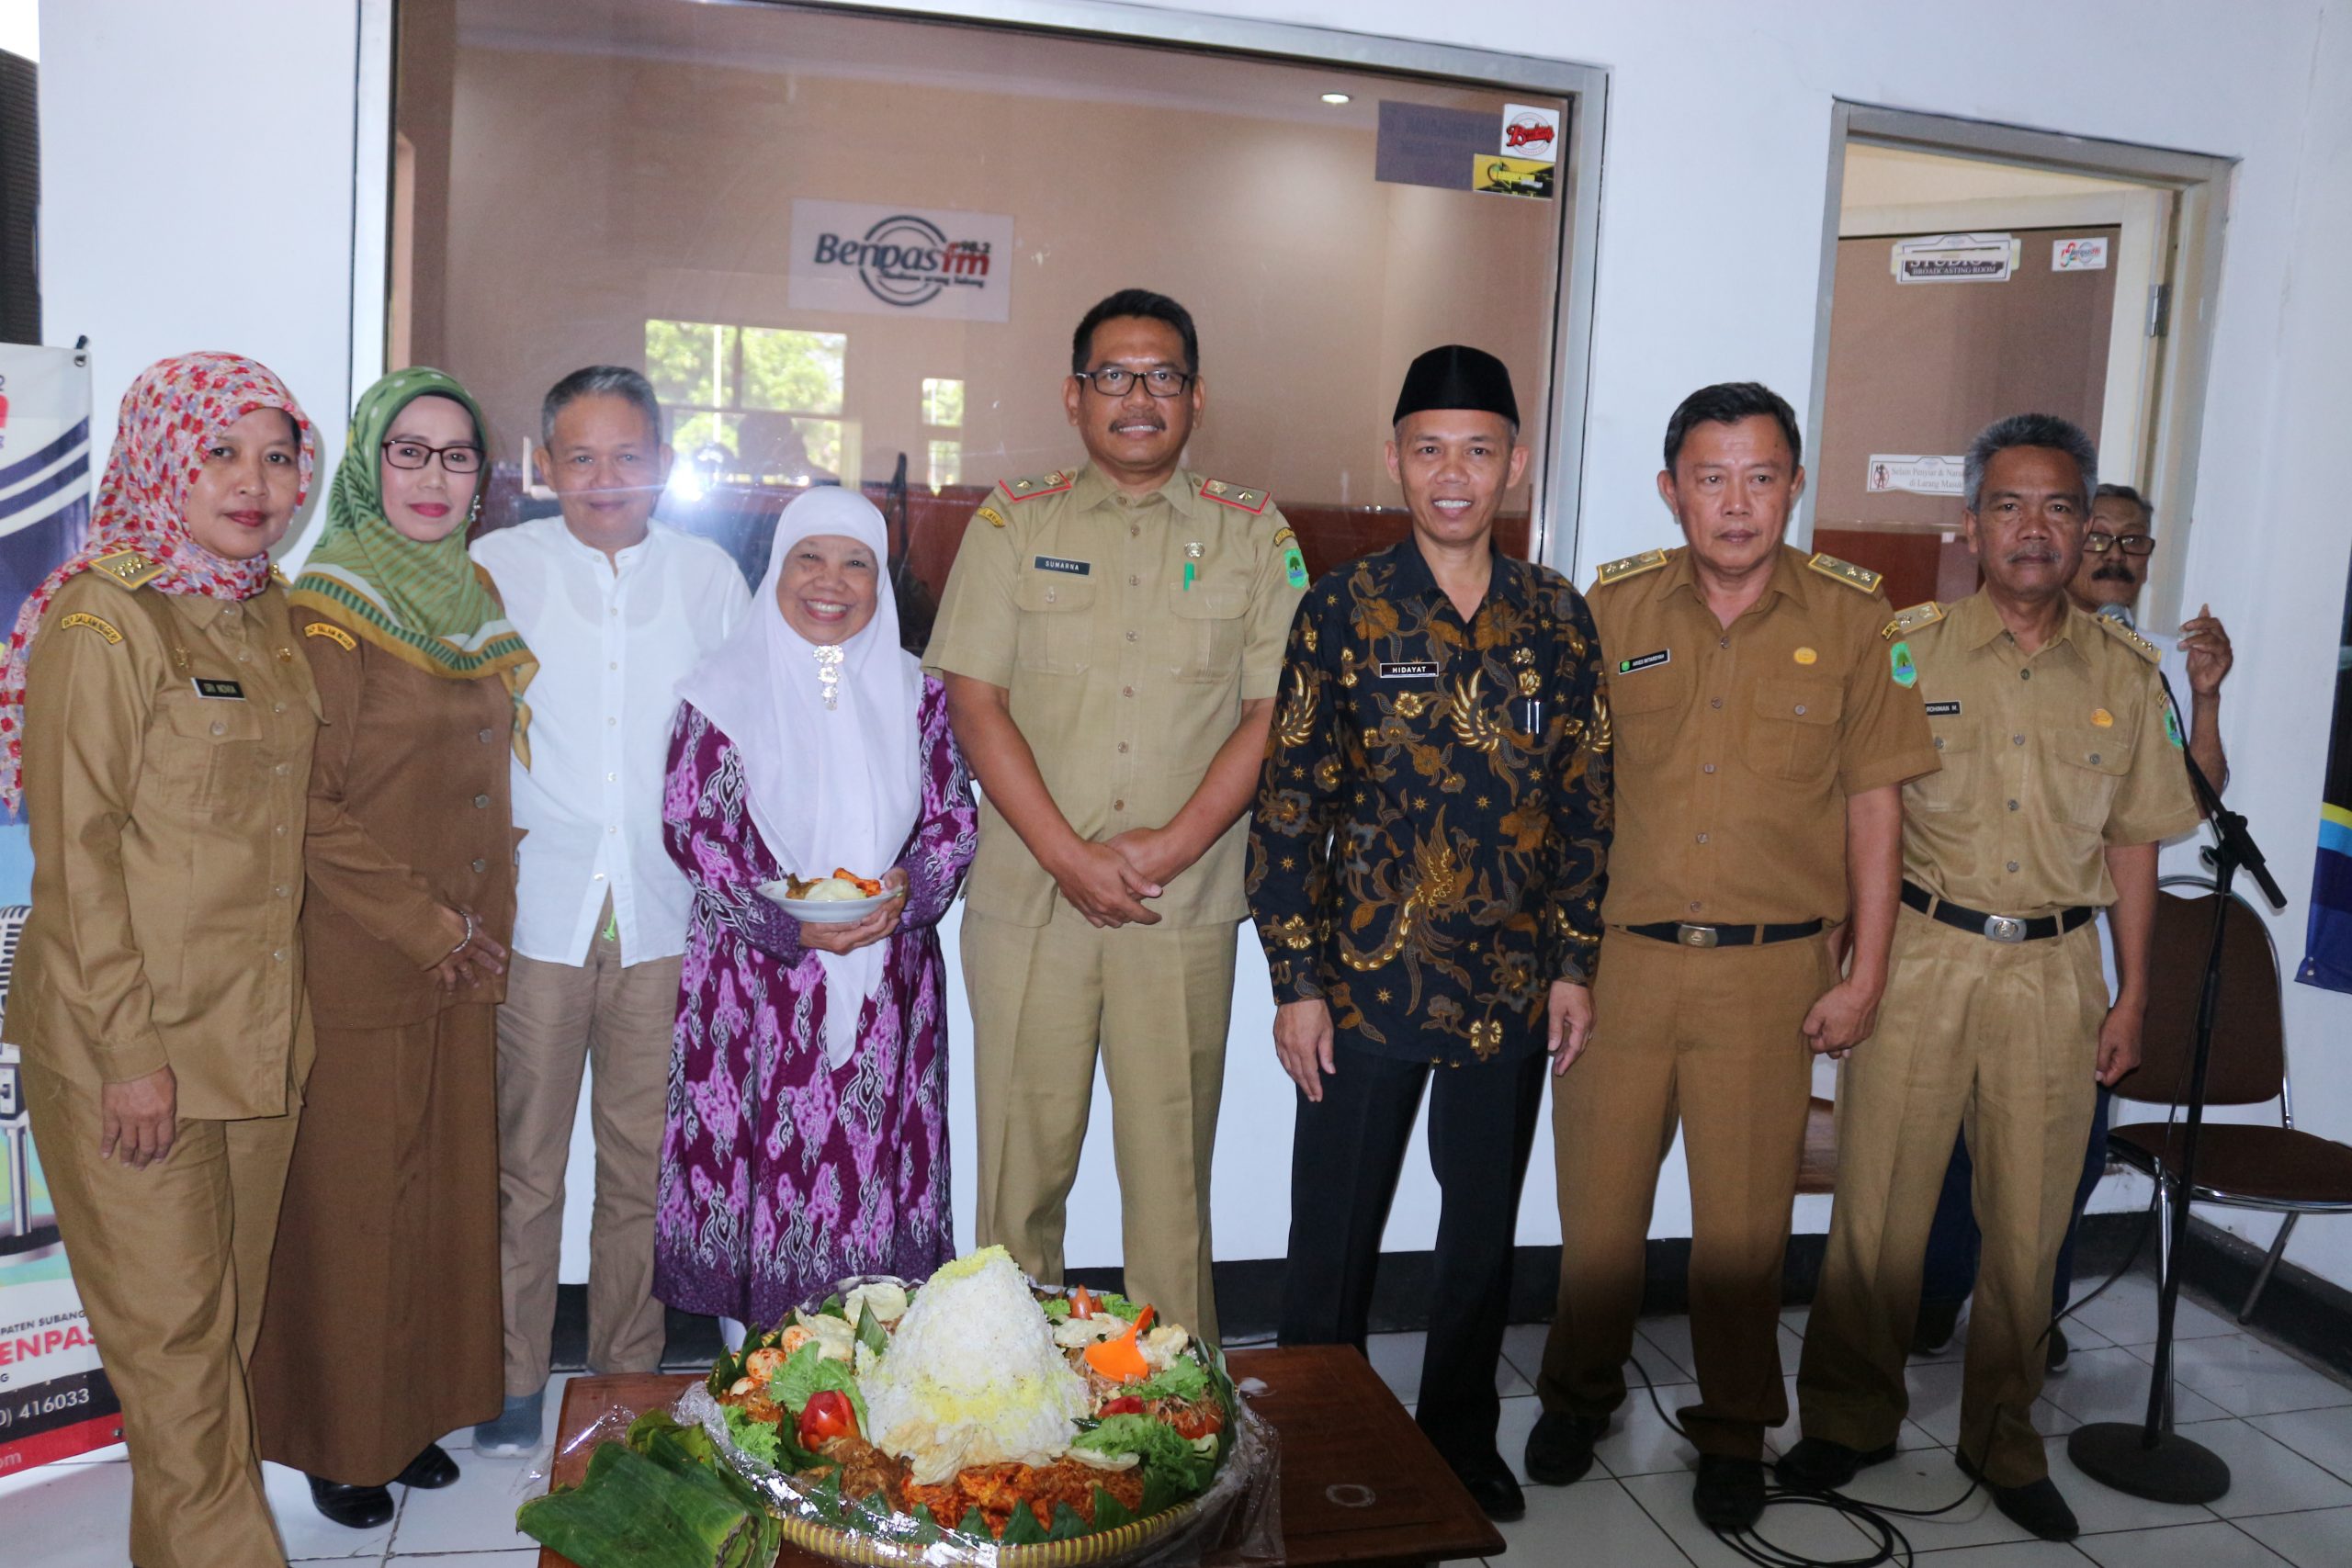 Milangkala Ke-53 Radio Benpas 98,2 FM, Ngajomantara Maheutkeun Tali Mimitran Nyukseskeun Subang Jawara